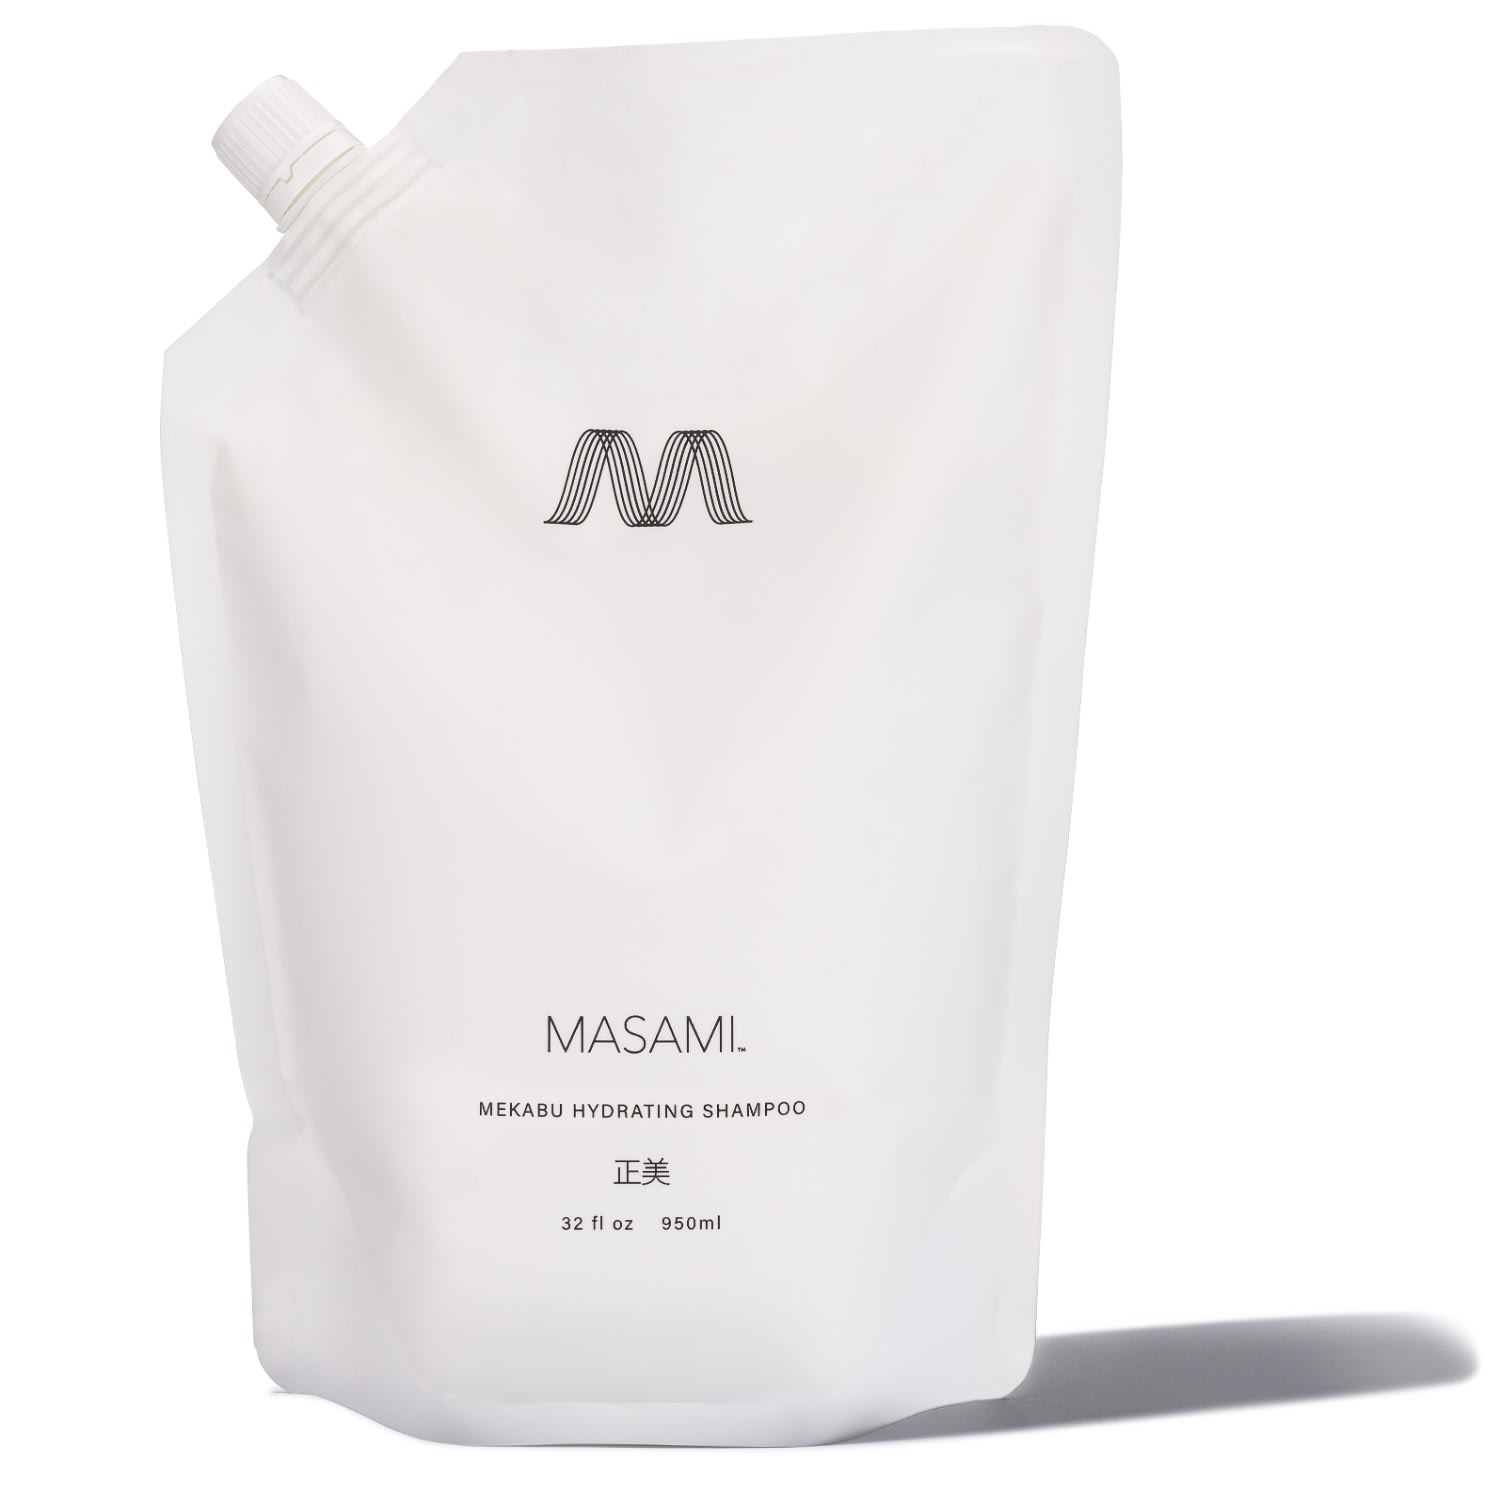 Masami White  Mekabu Hydrating Shampoo Large Size Refill Pouch